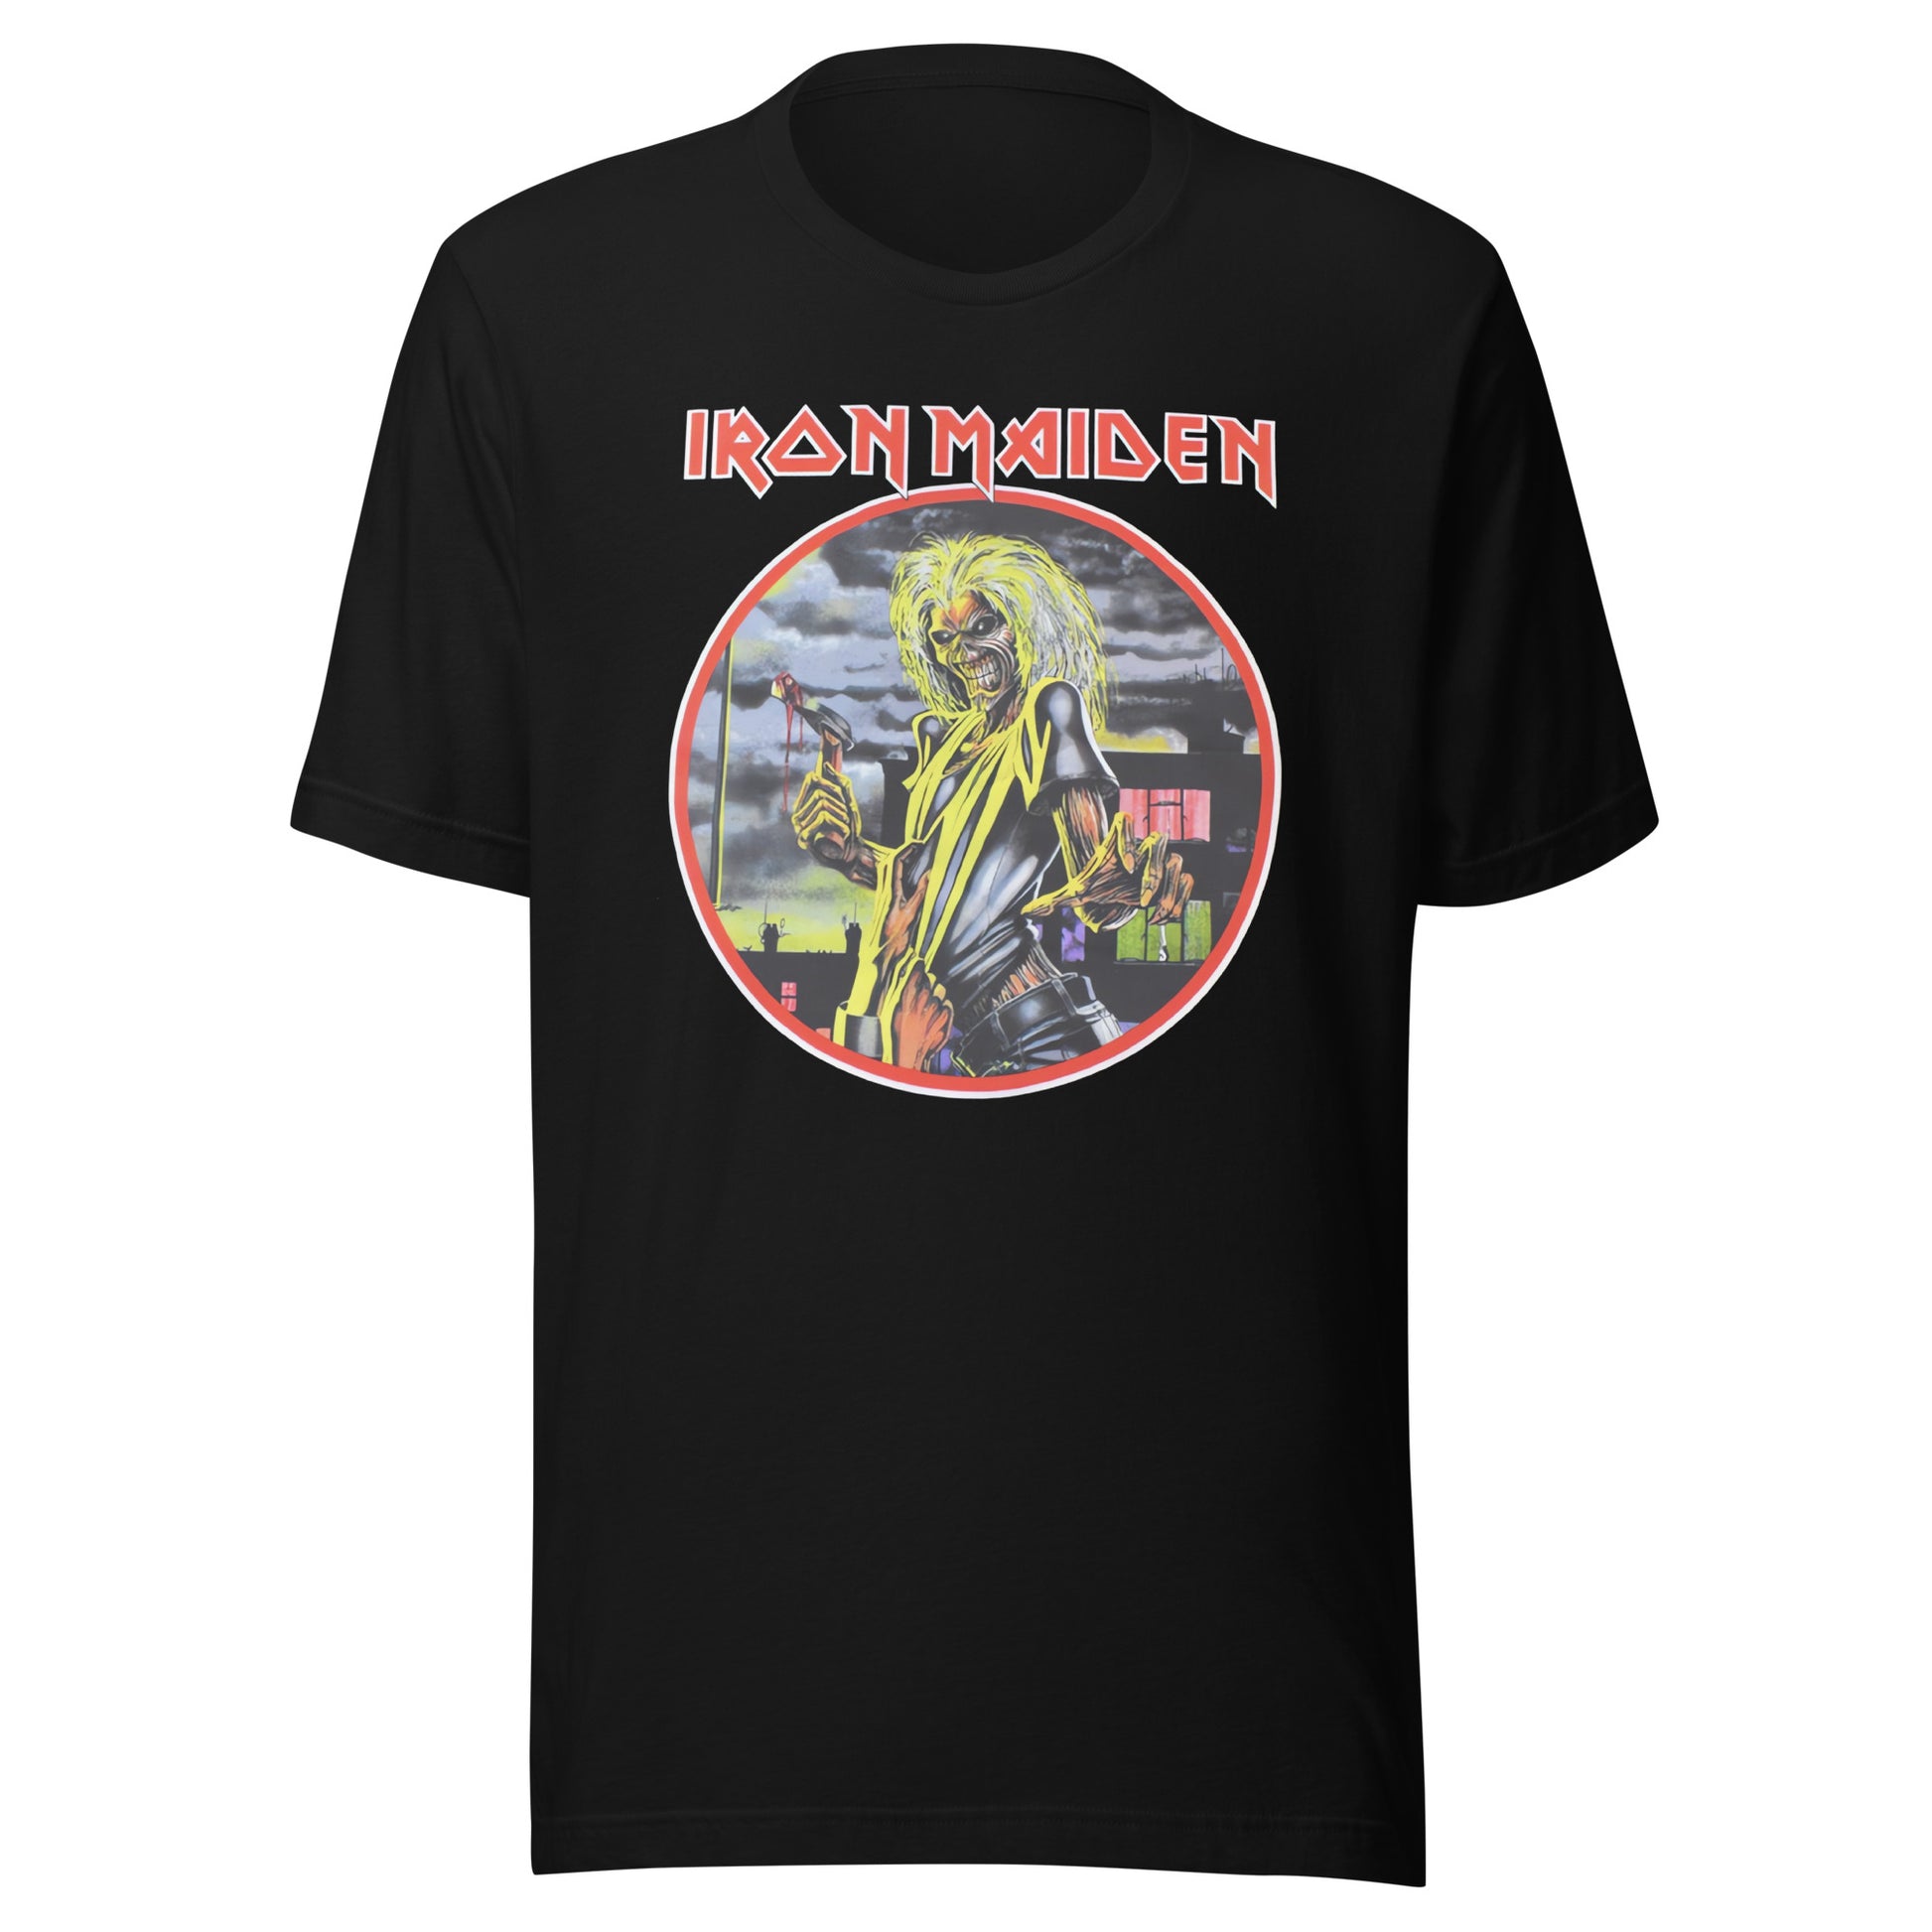 ¡Compra el mejor merchandising en Superstar! Encuentra diseños únicos y de alta calidad en playeras, Camiseta Classic Albums: Iron Maiden